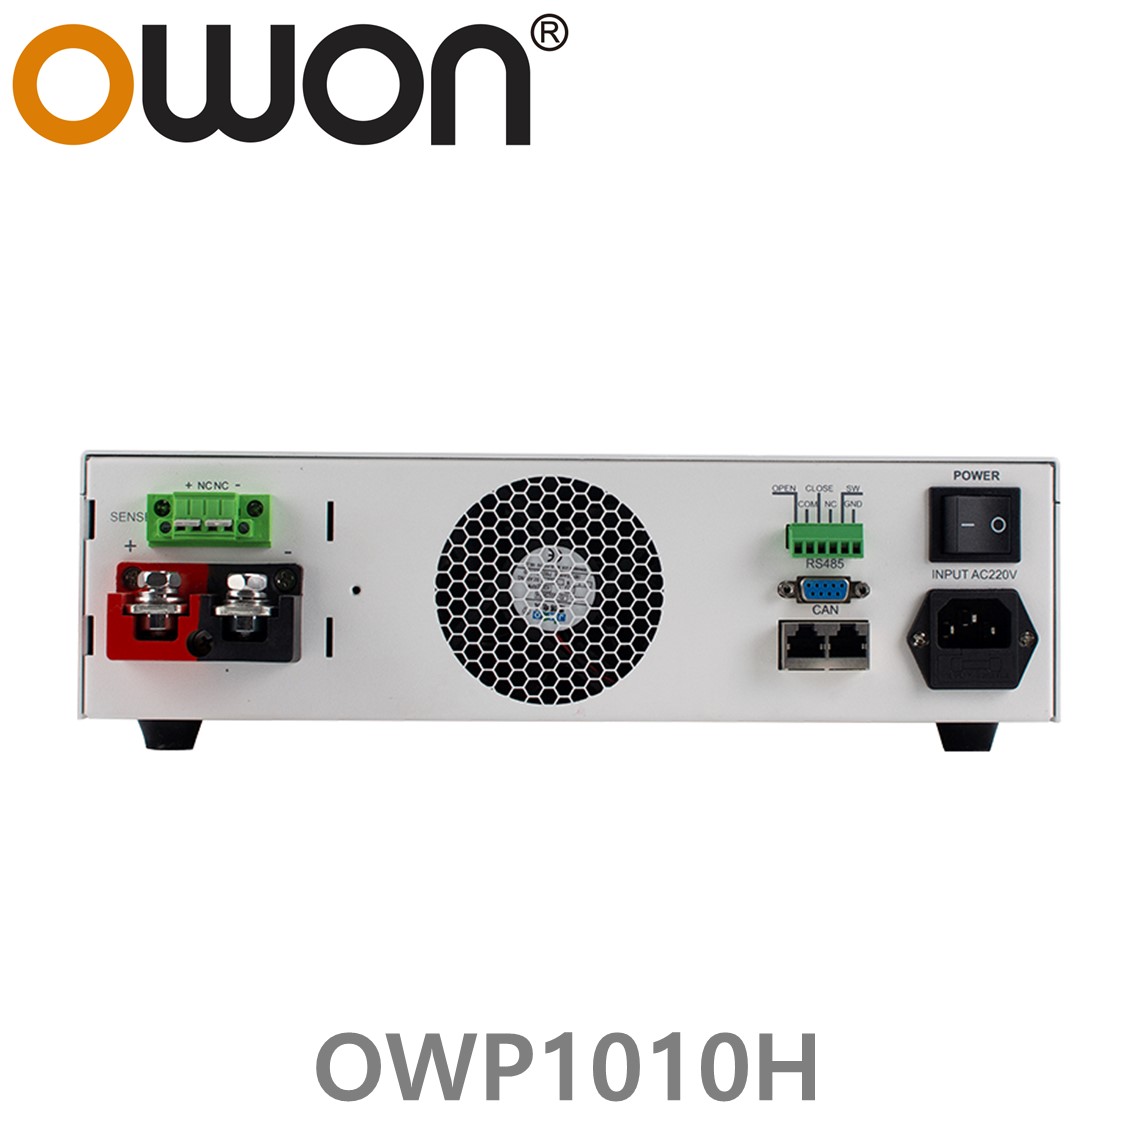 [ OWON ] OWP1010H 고전력 DC파워서플라이, 0-100.00V / 0-15.000A / 1000.0W DC전원공급장치